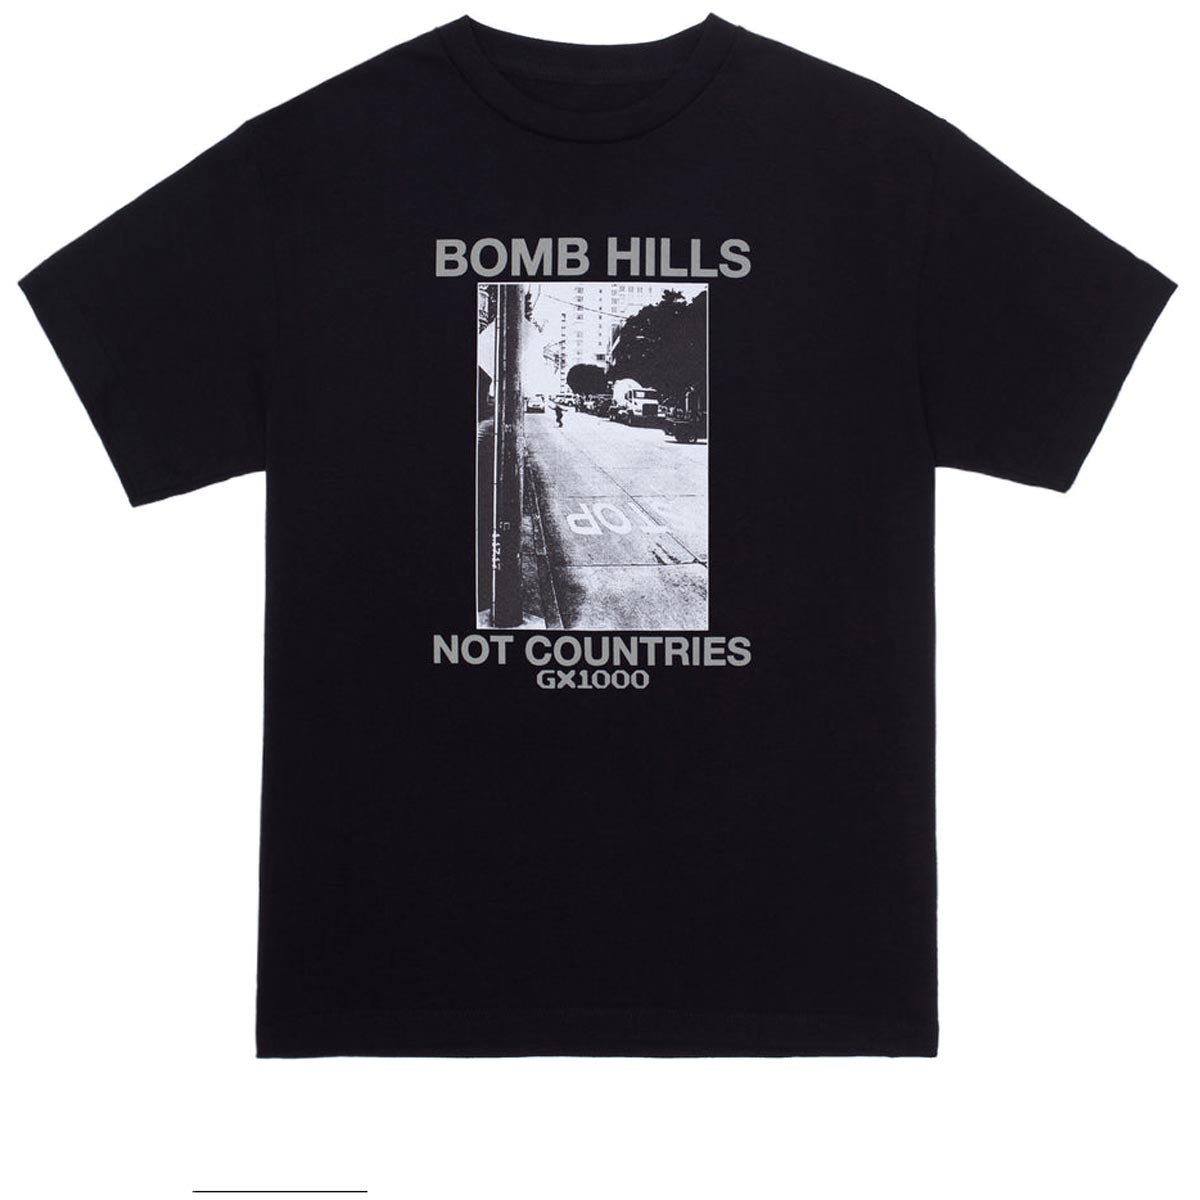 GX1000 Bomb Hills Not Countries T-Shirt - Black image 1